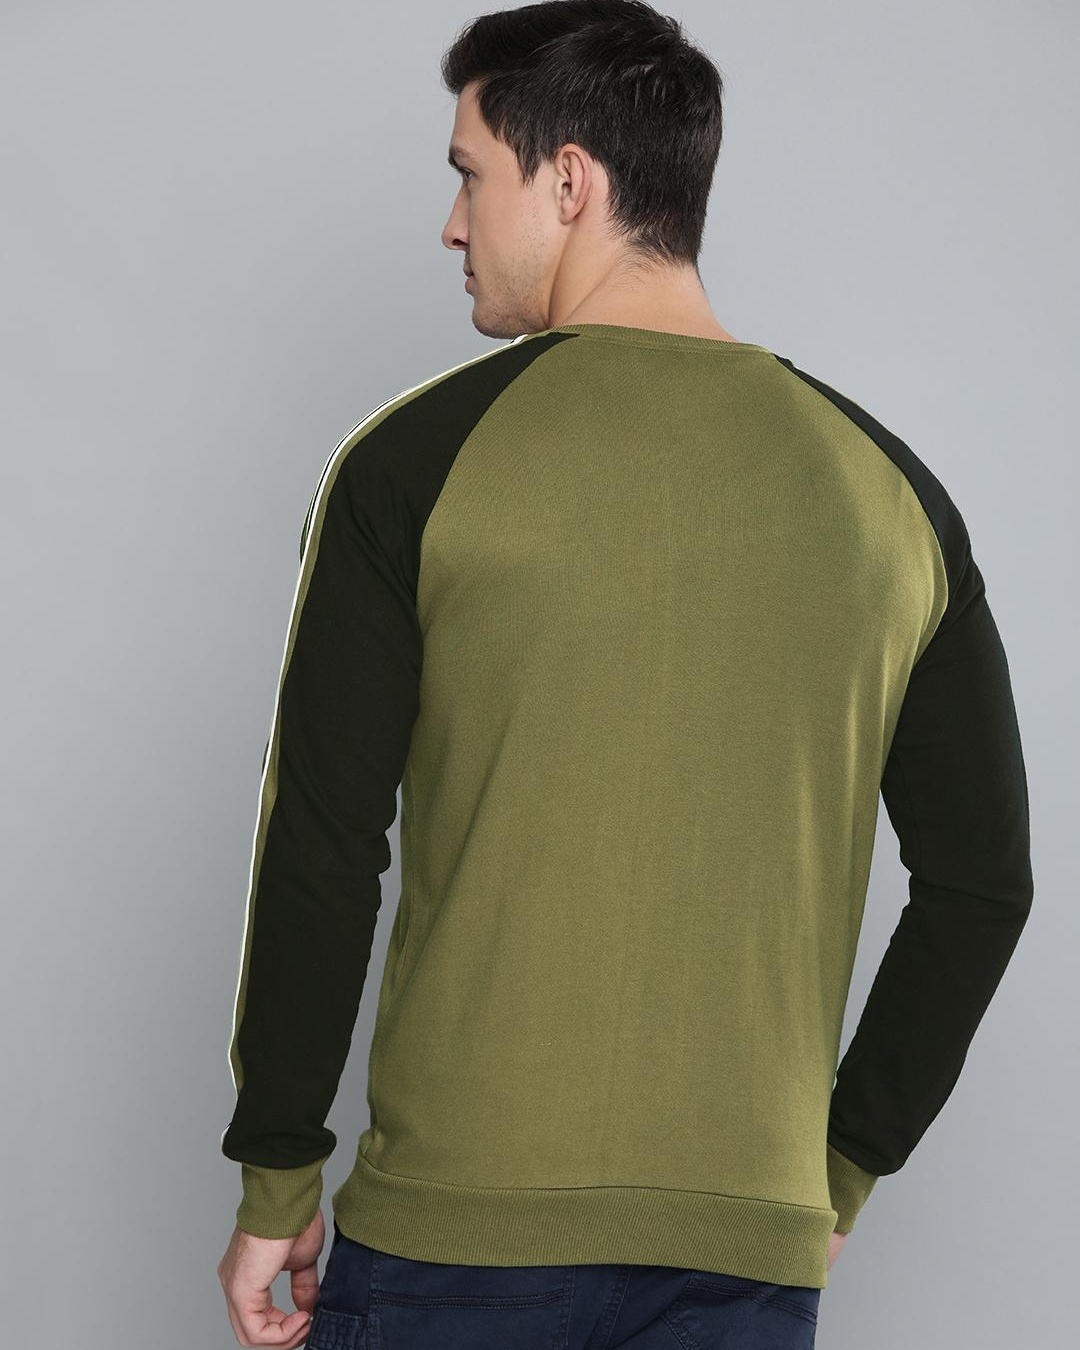 Buy Men's Green & Black Color Block Jacket for Men Green Online at Bewakoof